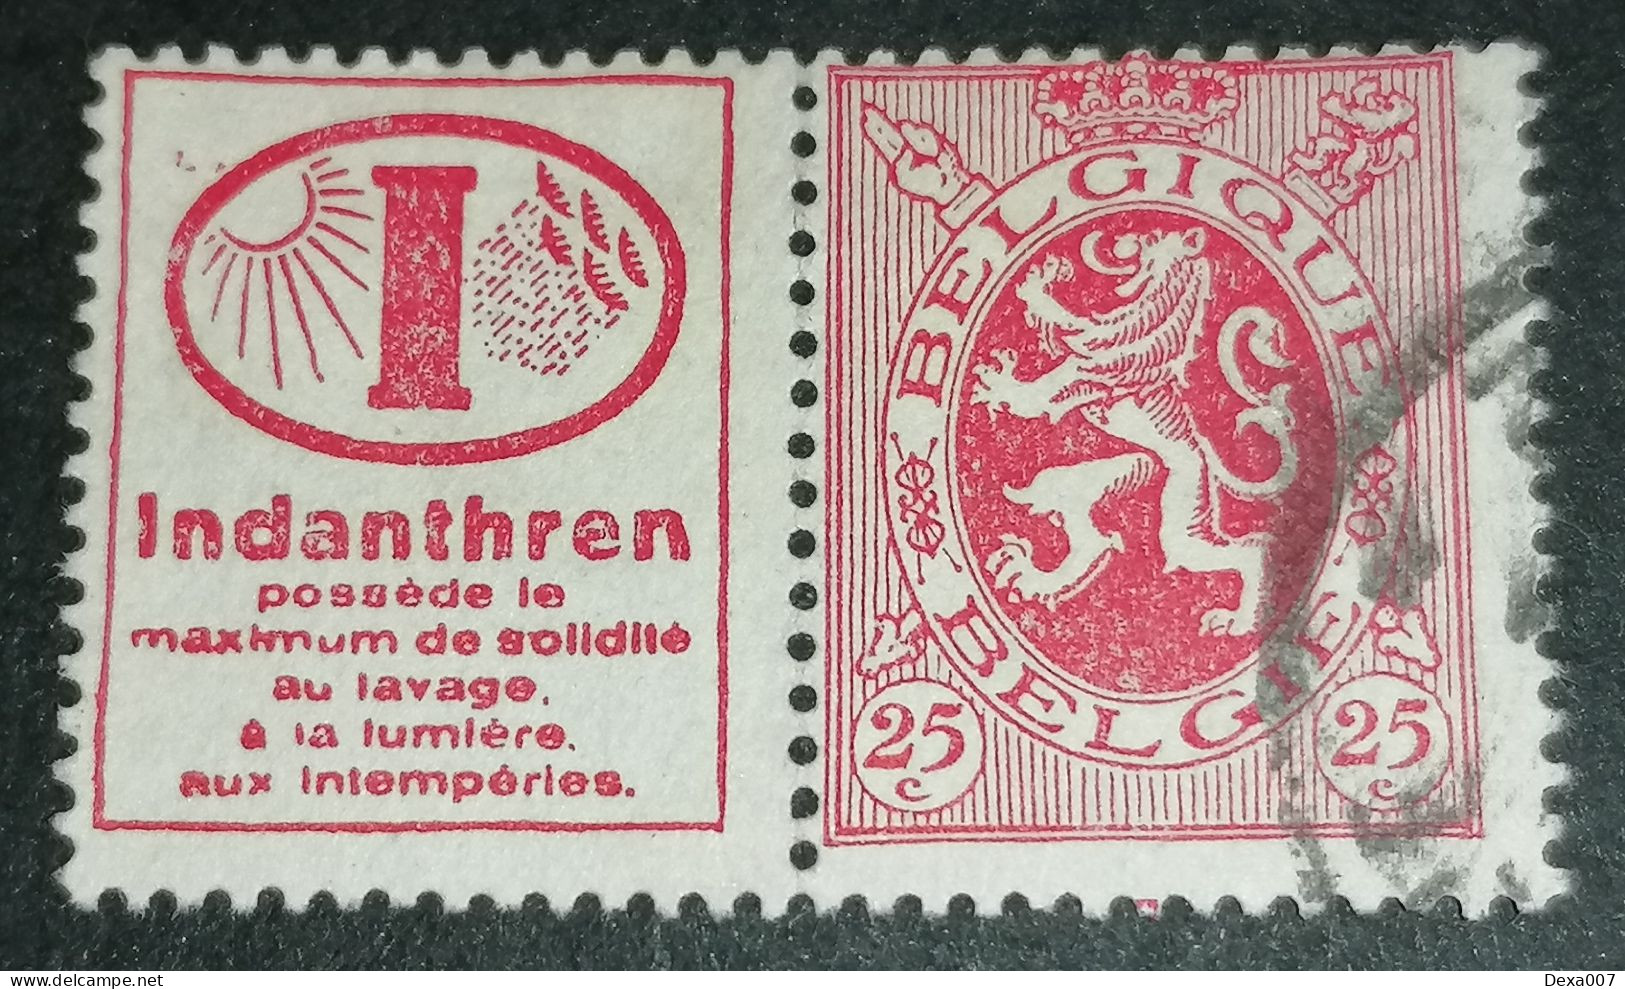 Belgium Advertising Stamp 007 - Afgestempeld